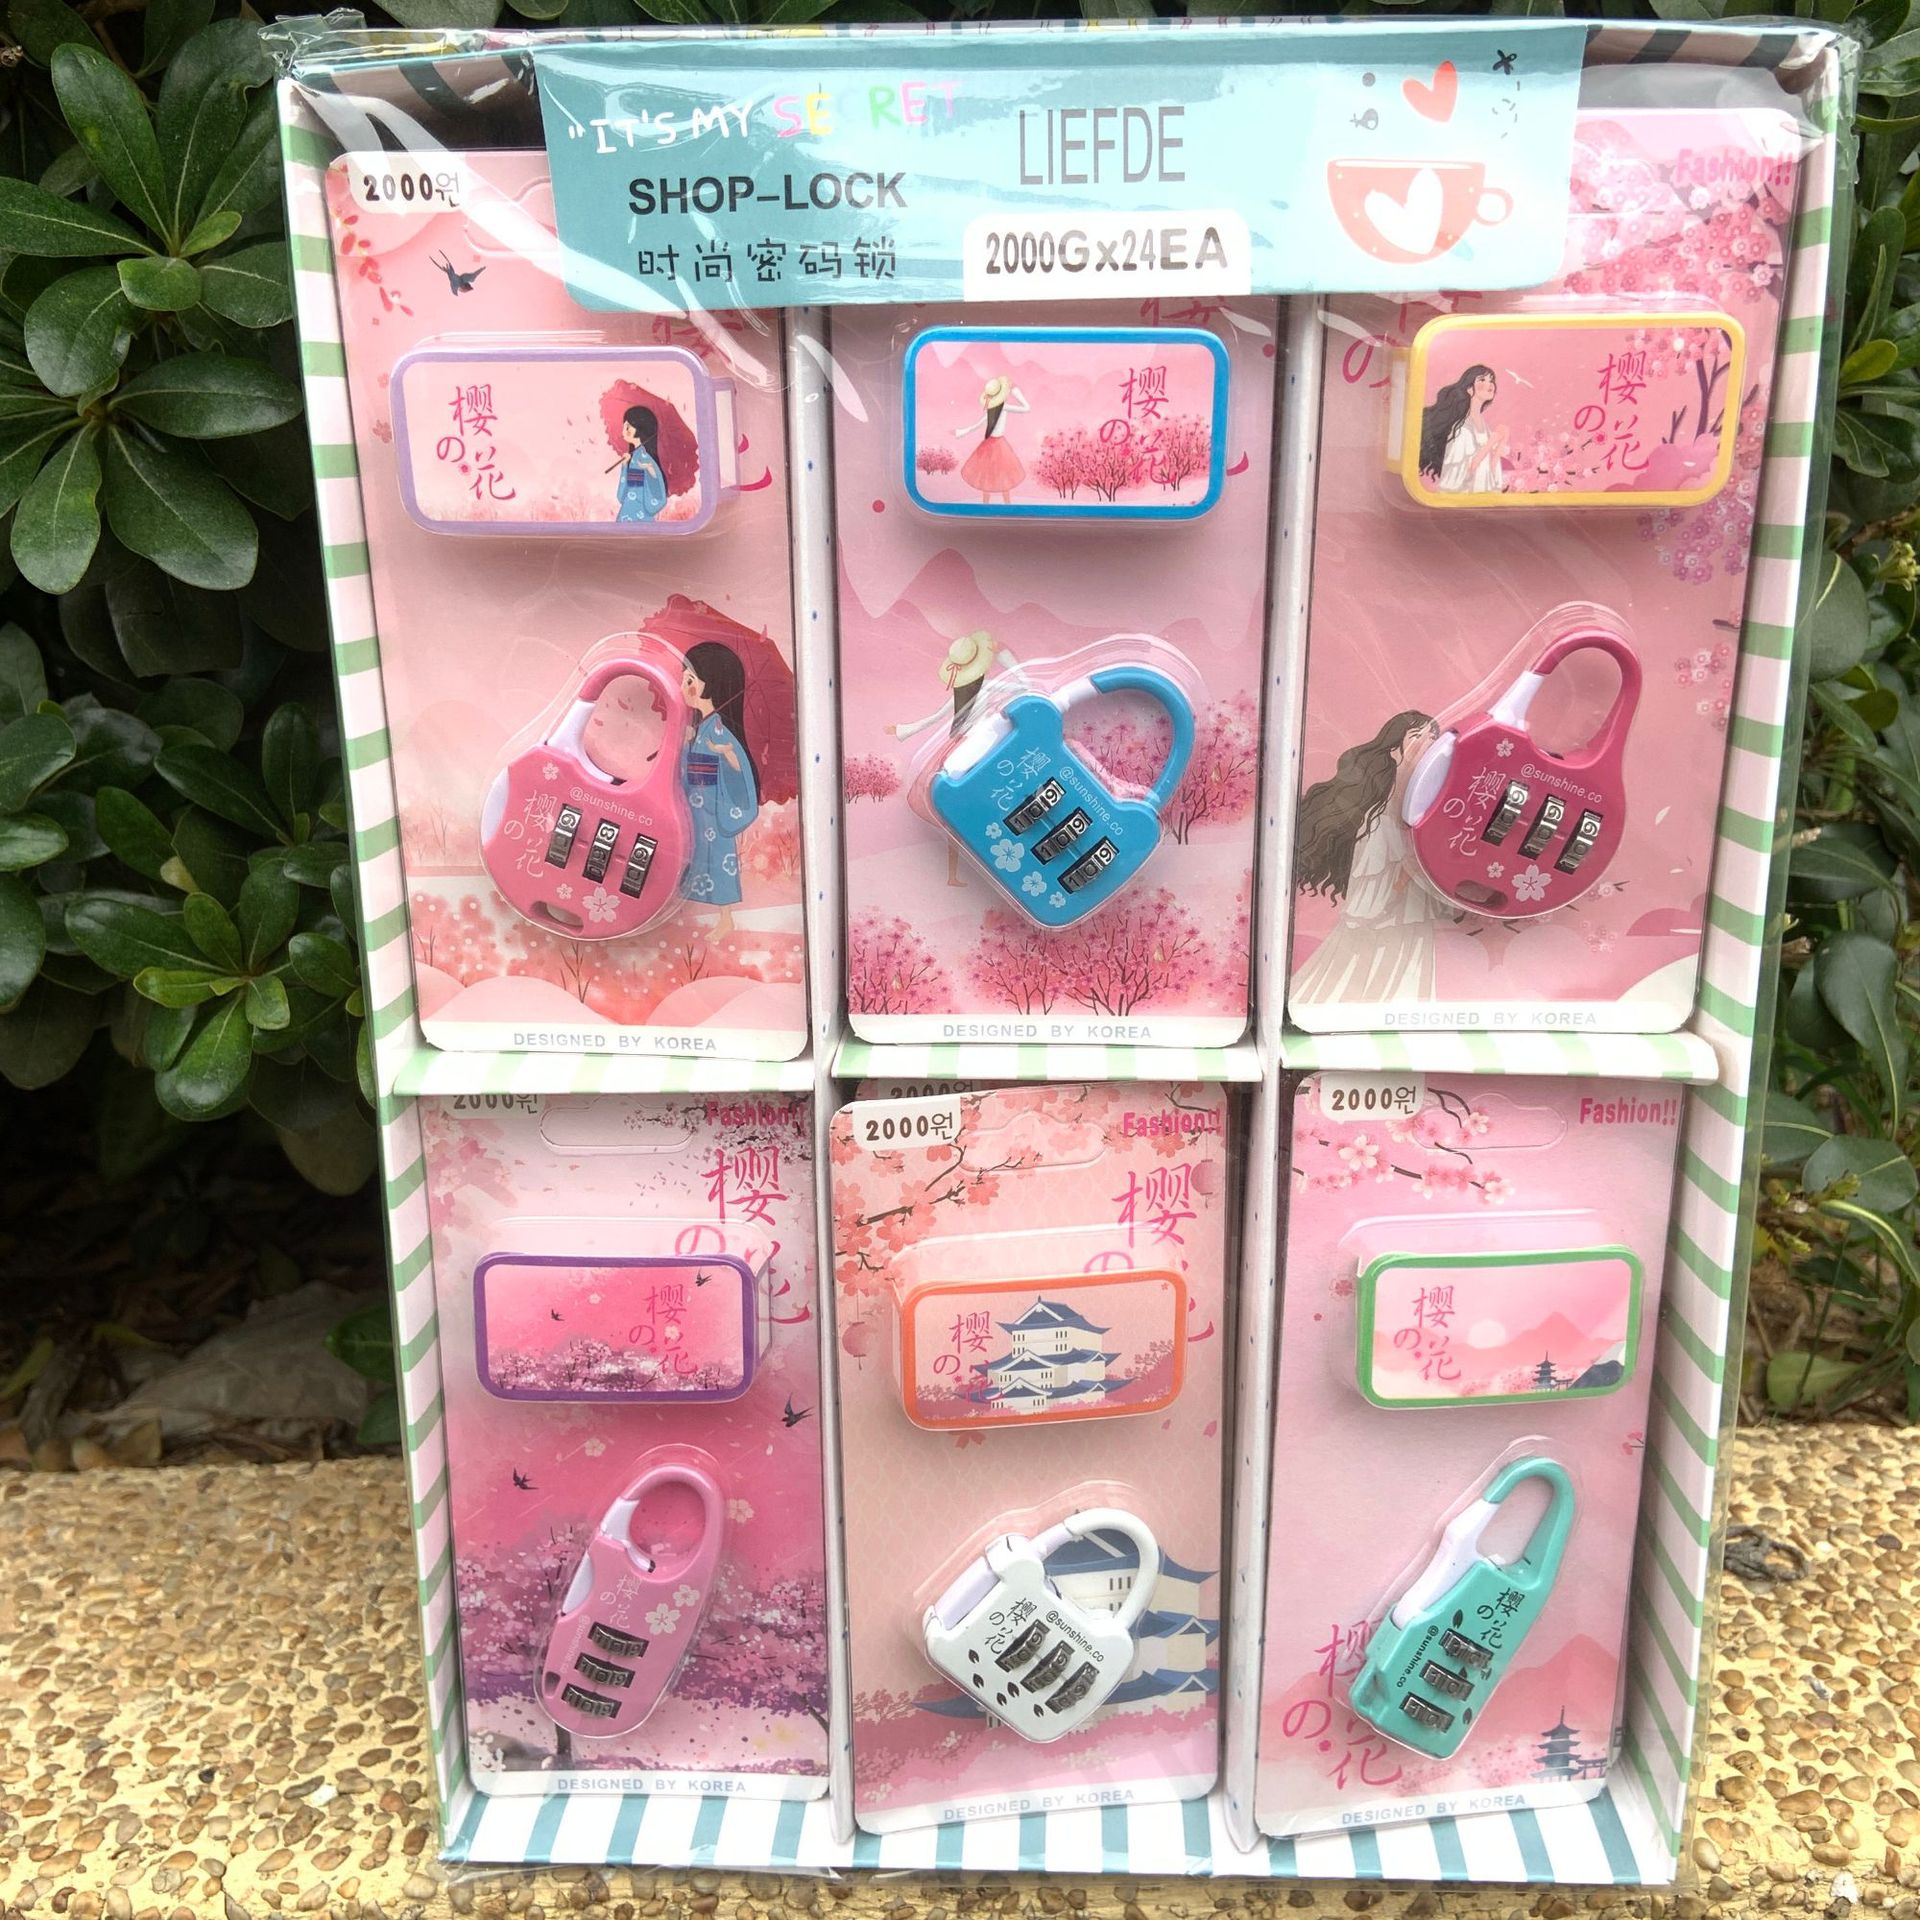 2000G创意粉色系时尚密码锁樱花季行李箱抽屉锁头迷你外贸密码锁